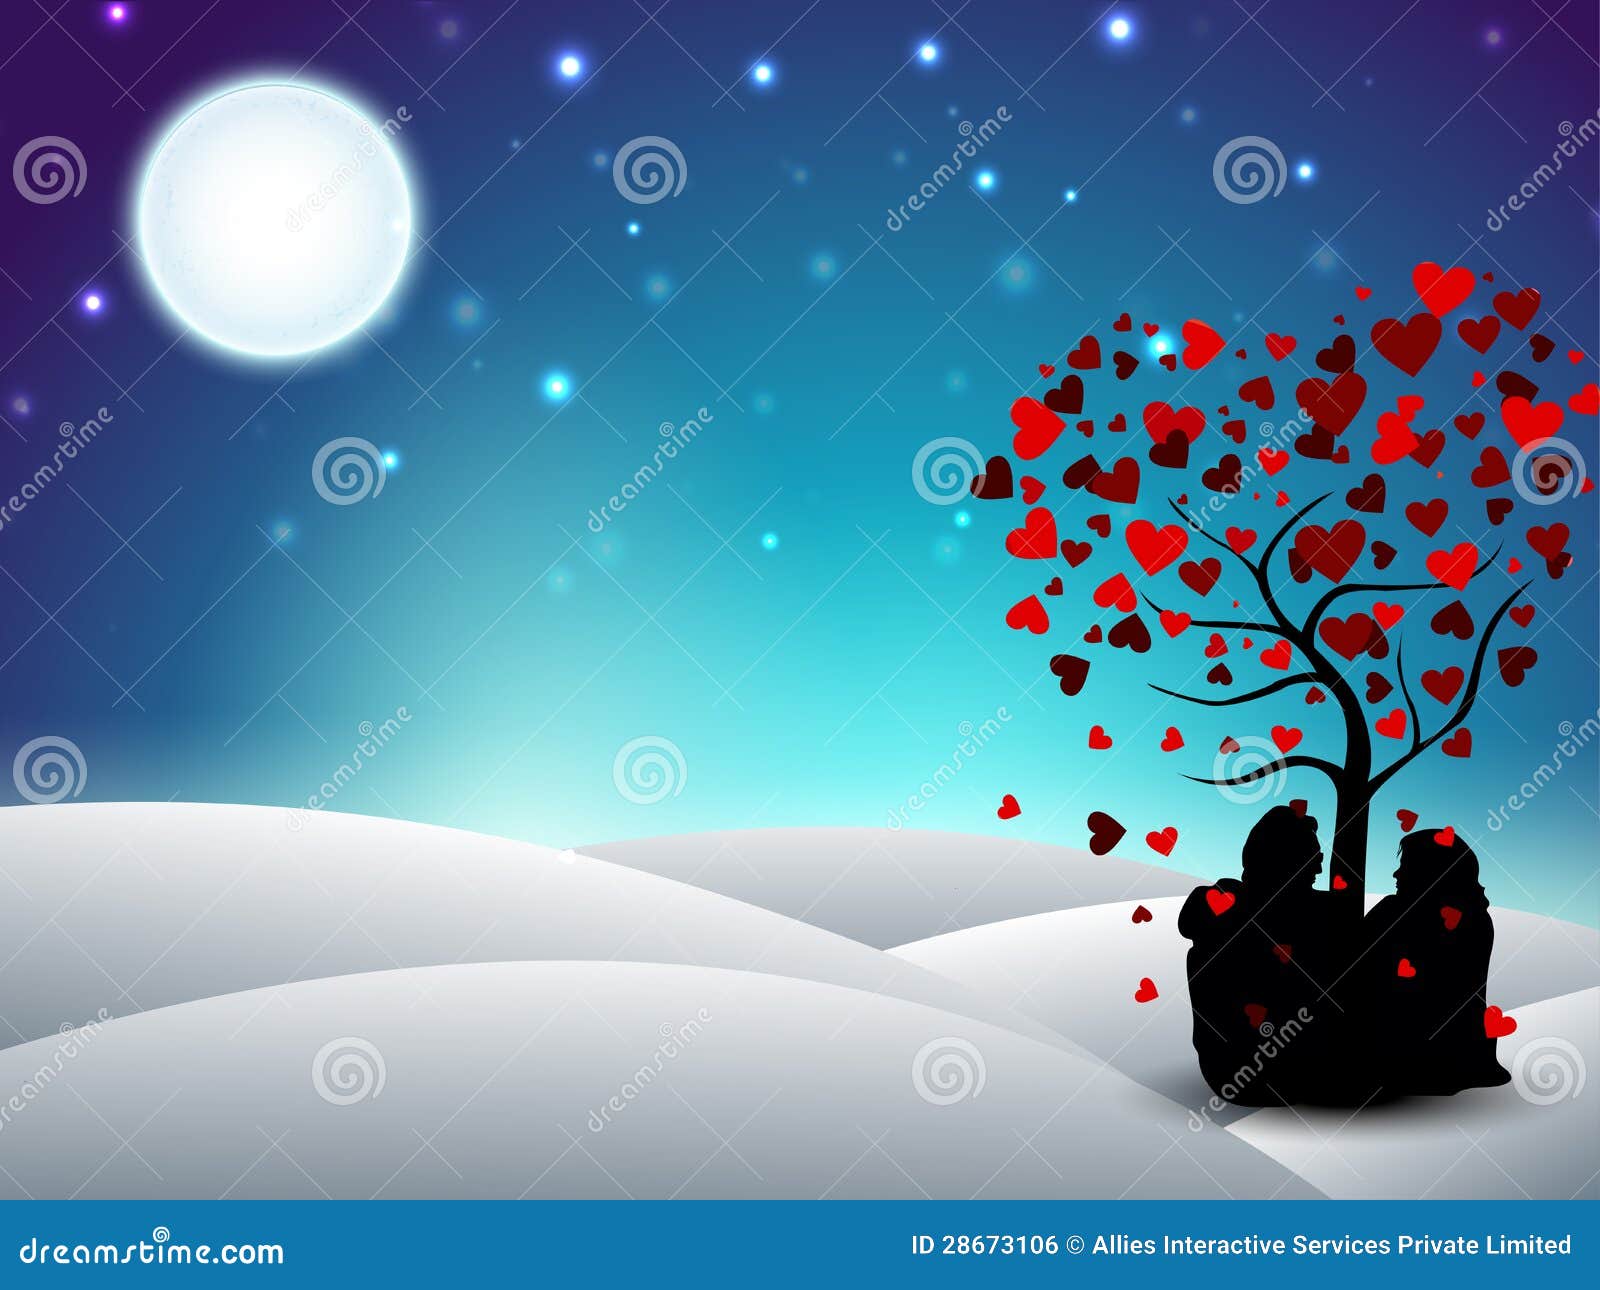 Fondo del invierno del día de tarjetas del día de San Valentín con la silueta de los pares que se sienta bajo el árbol de amor. EPS 10.